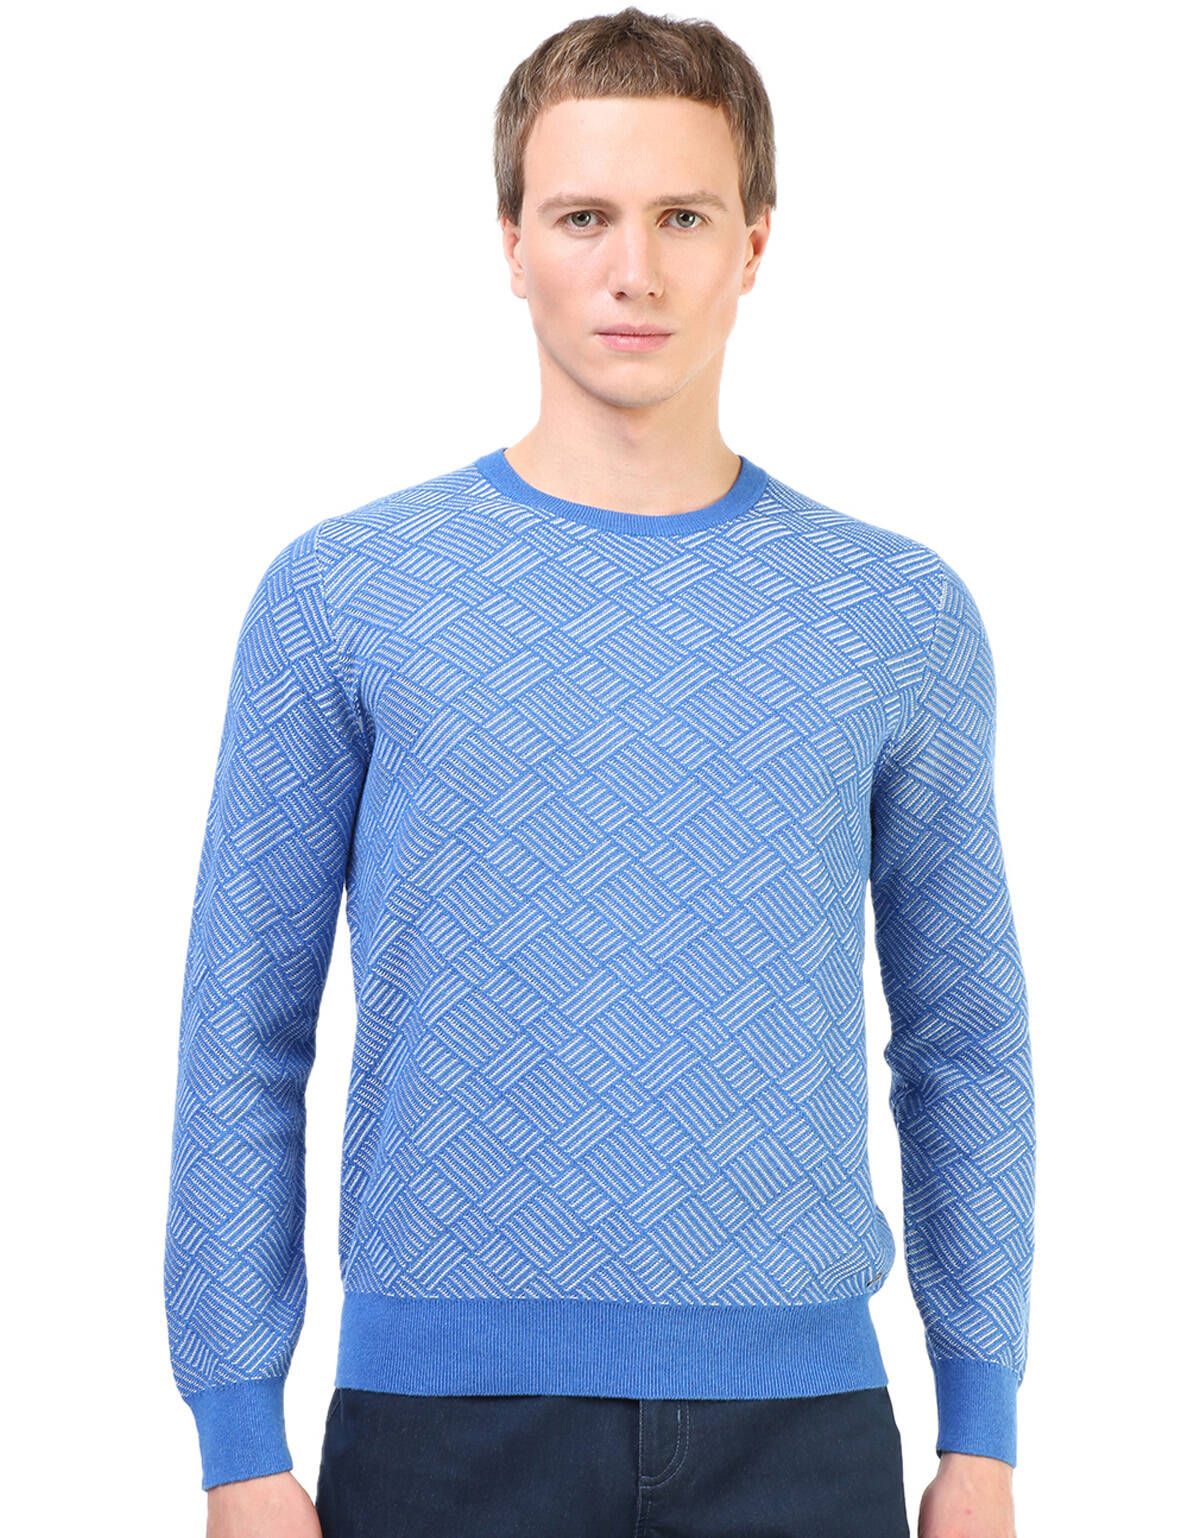 Пуловер с круглым вырезом синий с рисунком[Голубой]